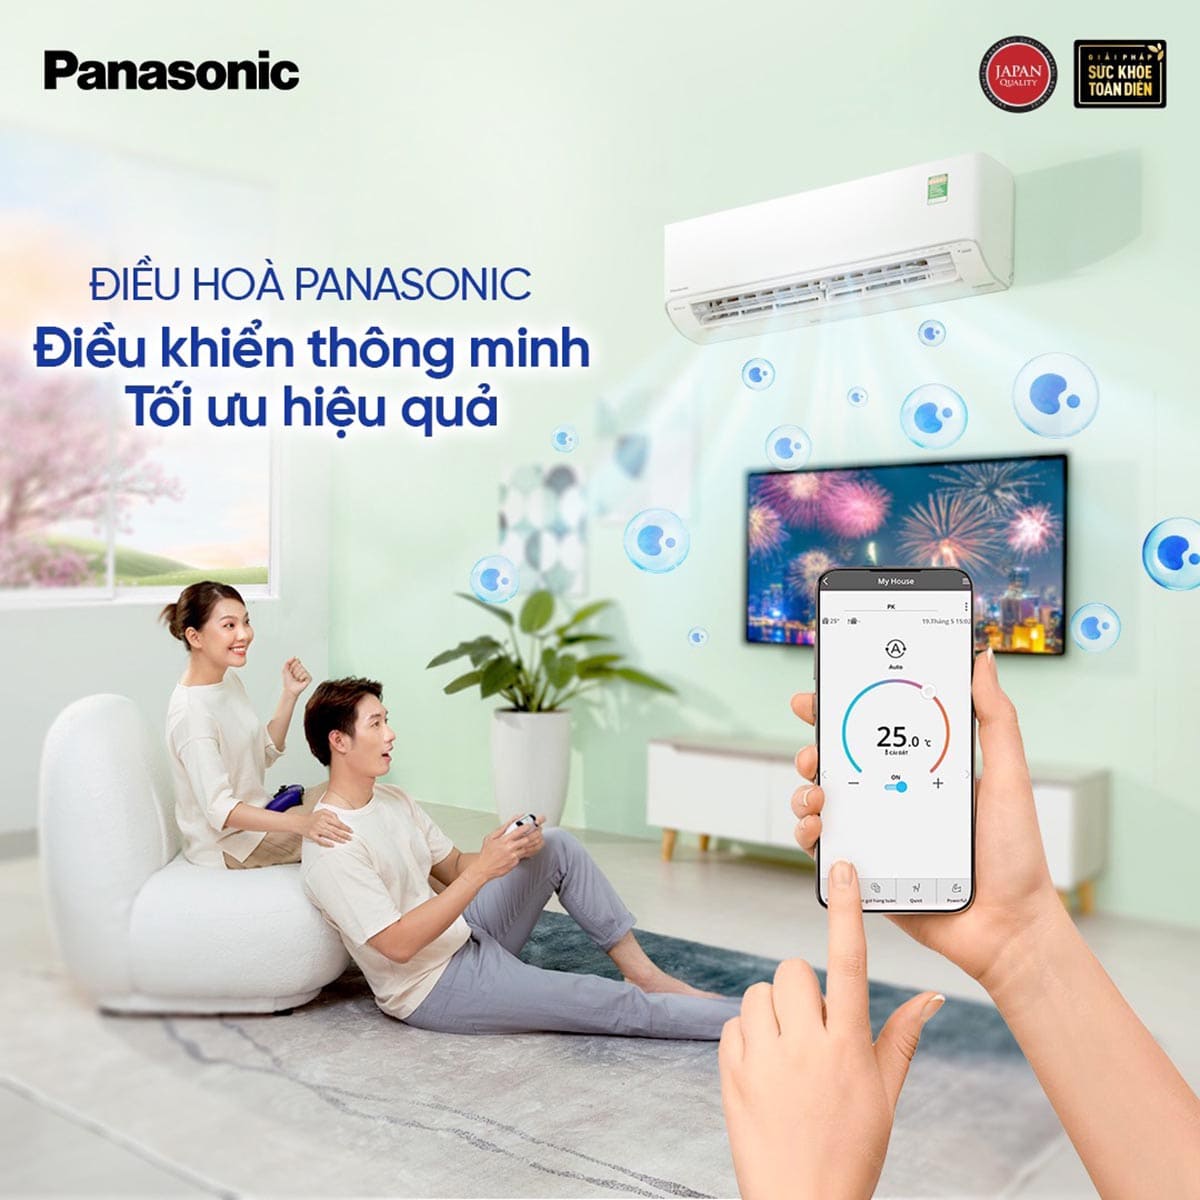 Ứng dụng Panasonic Comfort Cloud hỗ trợ điều khiển máy lạnh Panasonic